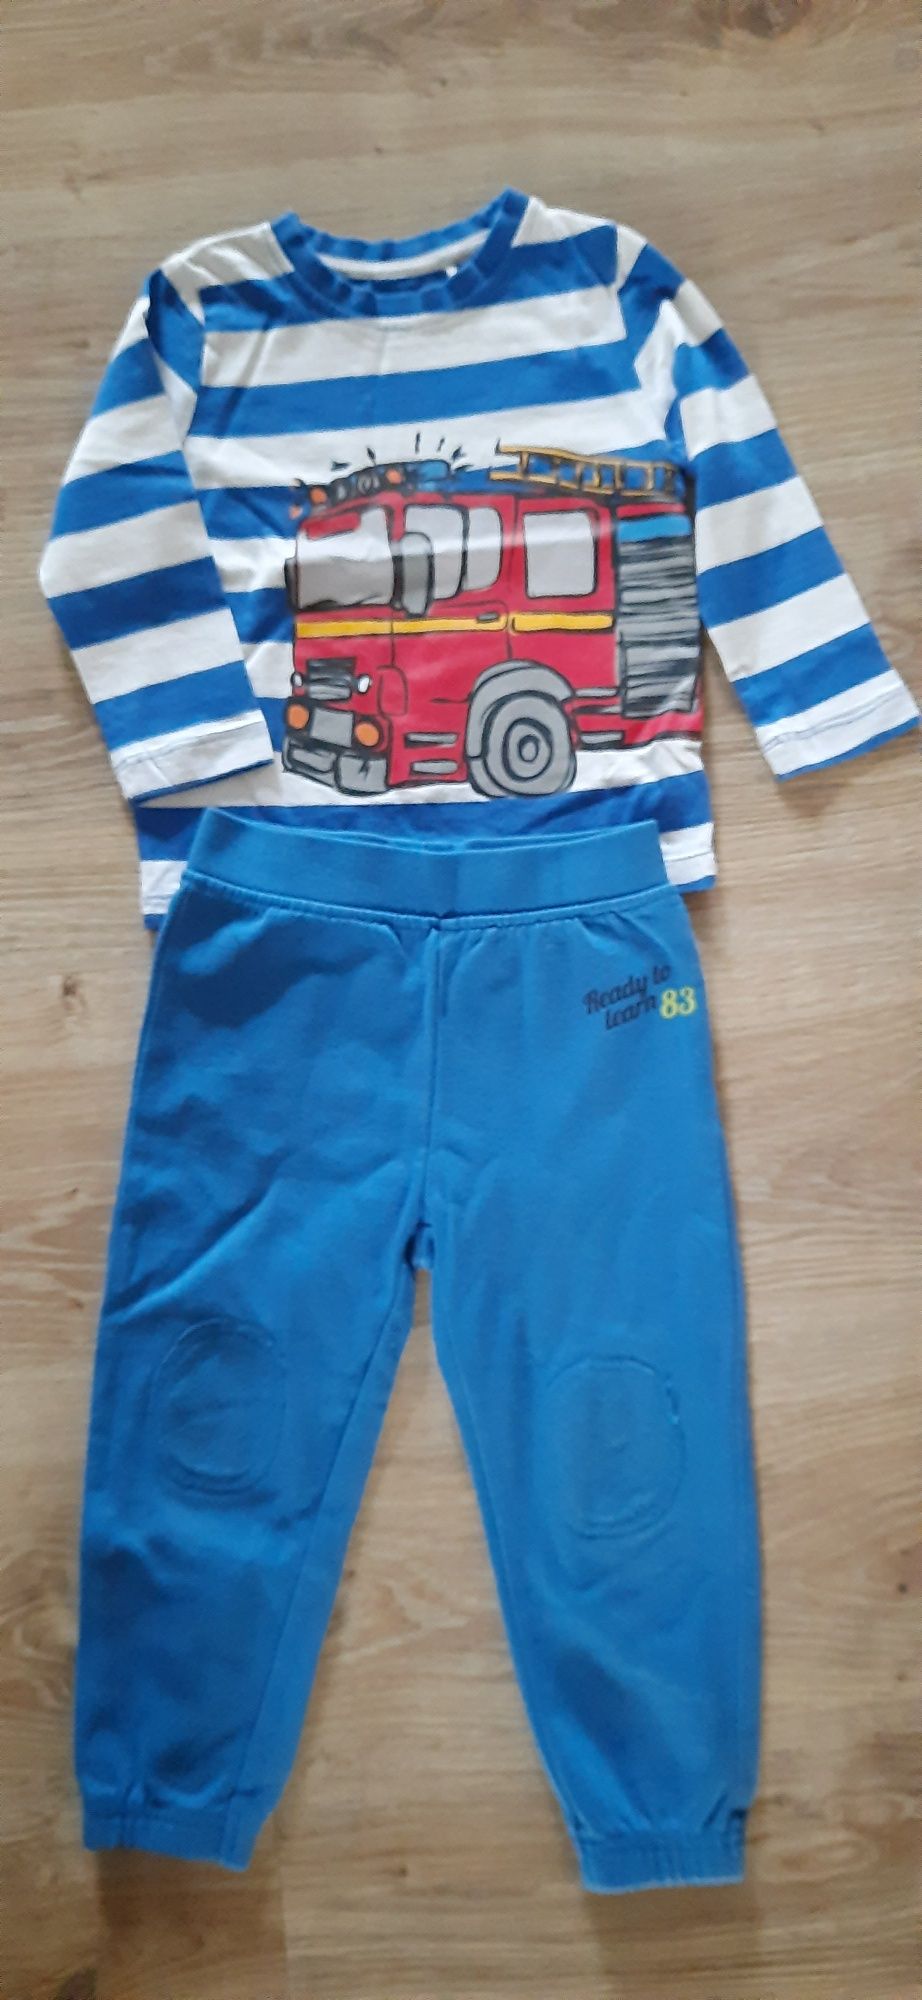 Spodnie i bluza,  komplet dla chłopca 92